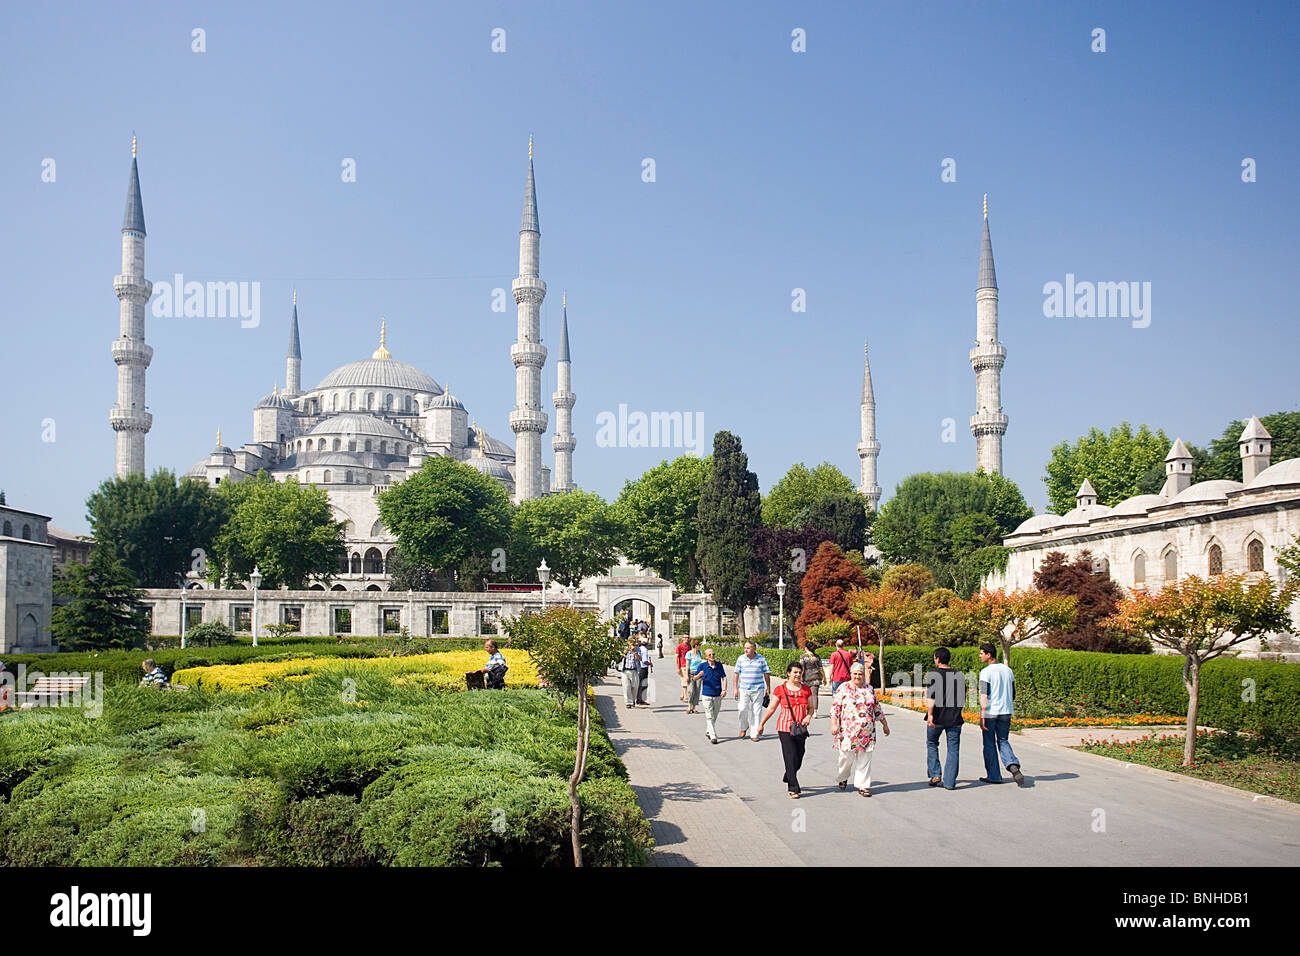 La Turchia Giugno 2008 Istanbul city Moschea Blu Sultan Ahmed Mosque parco giardino verde minareti Islam persone Foto Stock